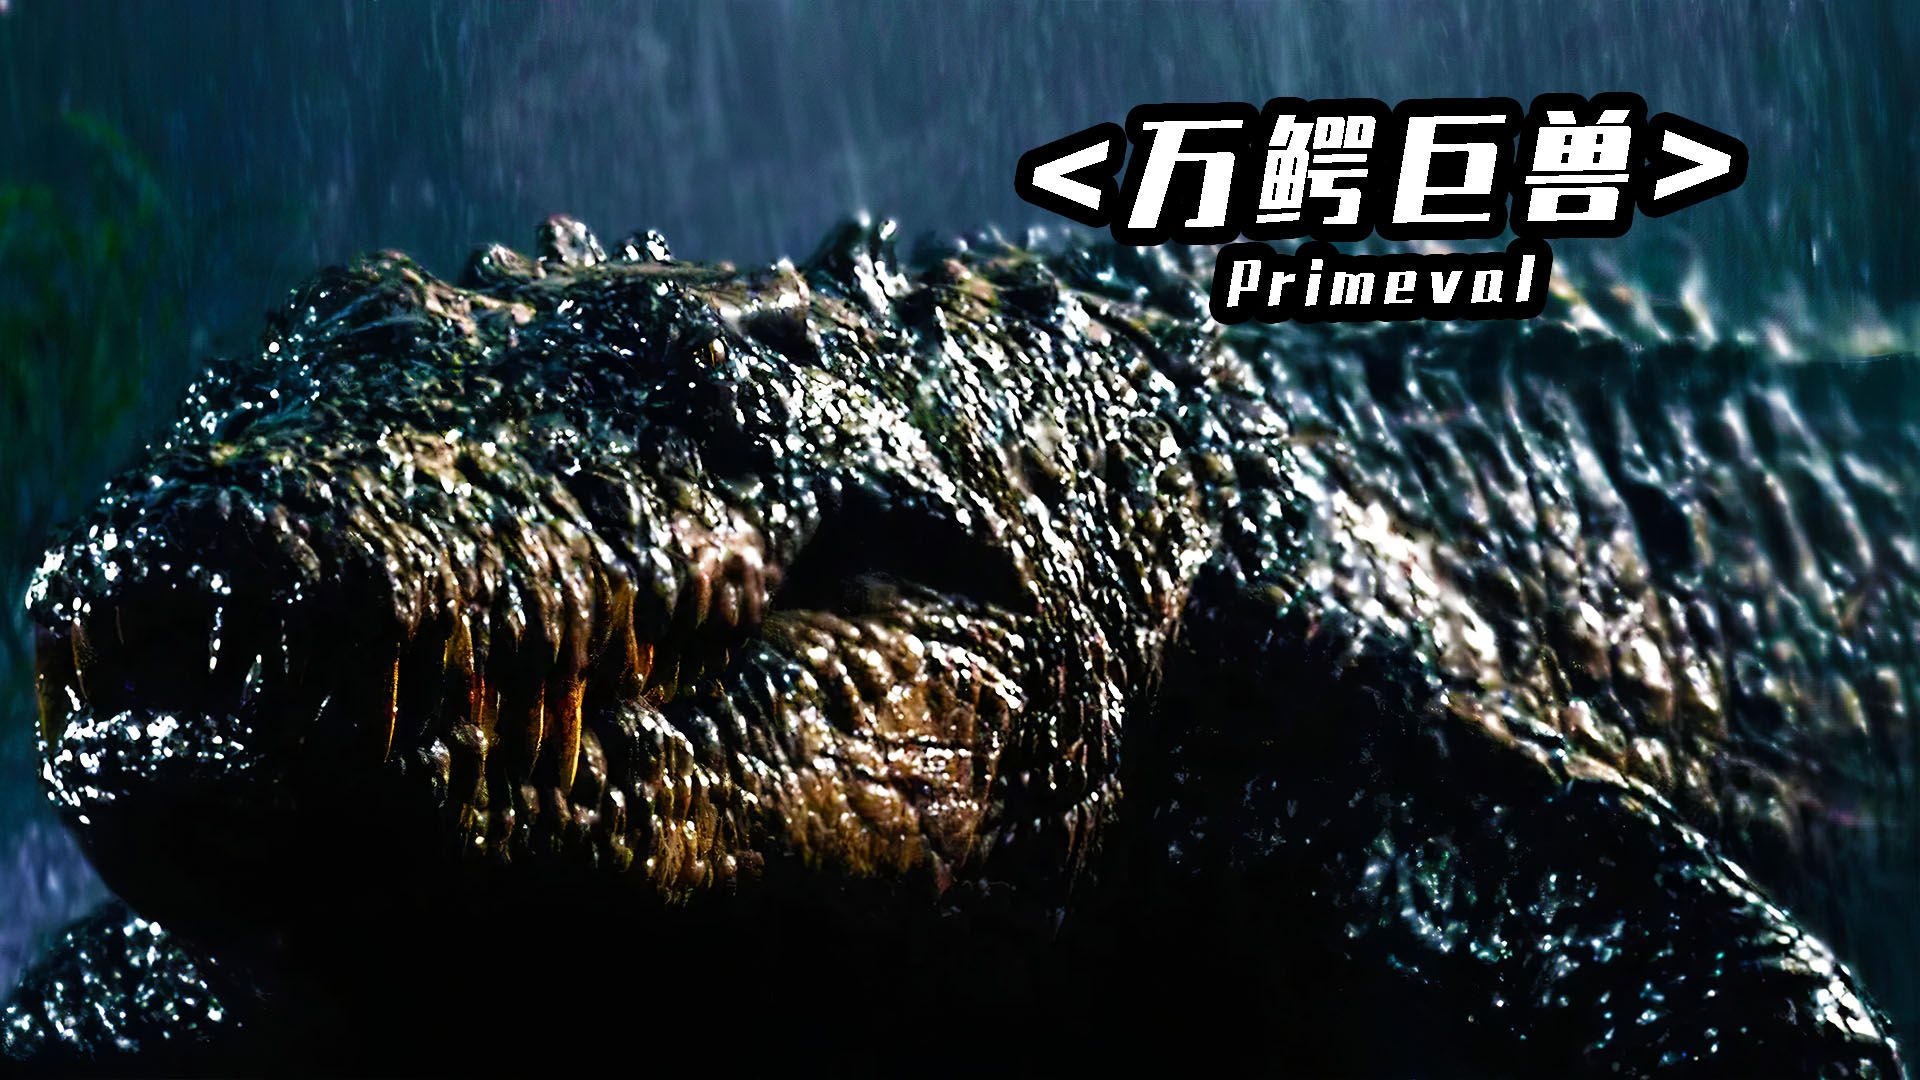 《万鳄巨兽》古斯塔夫邪恶连环杀人犯的真相,一条25尺长超大巨鳄